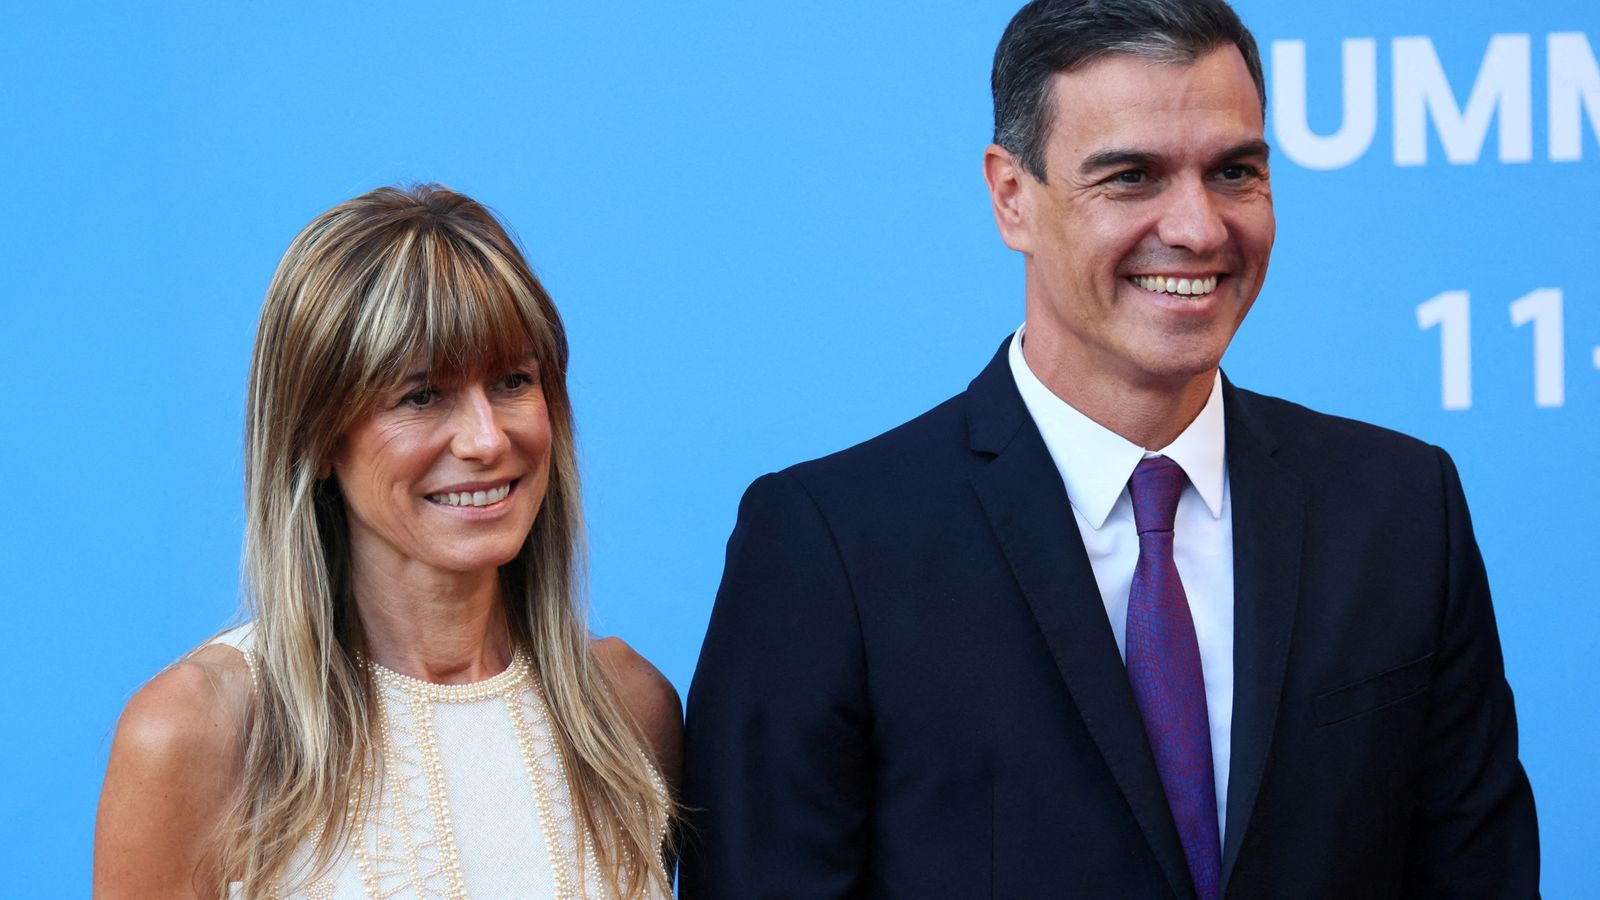 Pedro Sanchez décide de rester Premier ministre espagnol malgré les allégations de corruption contre son épouse |  Nouvelles du monde